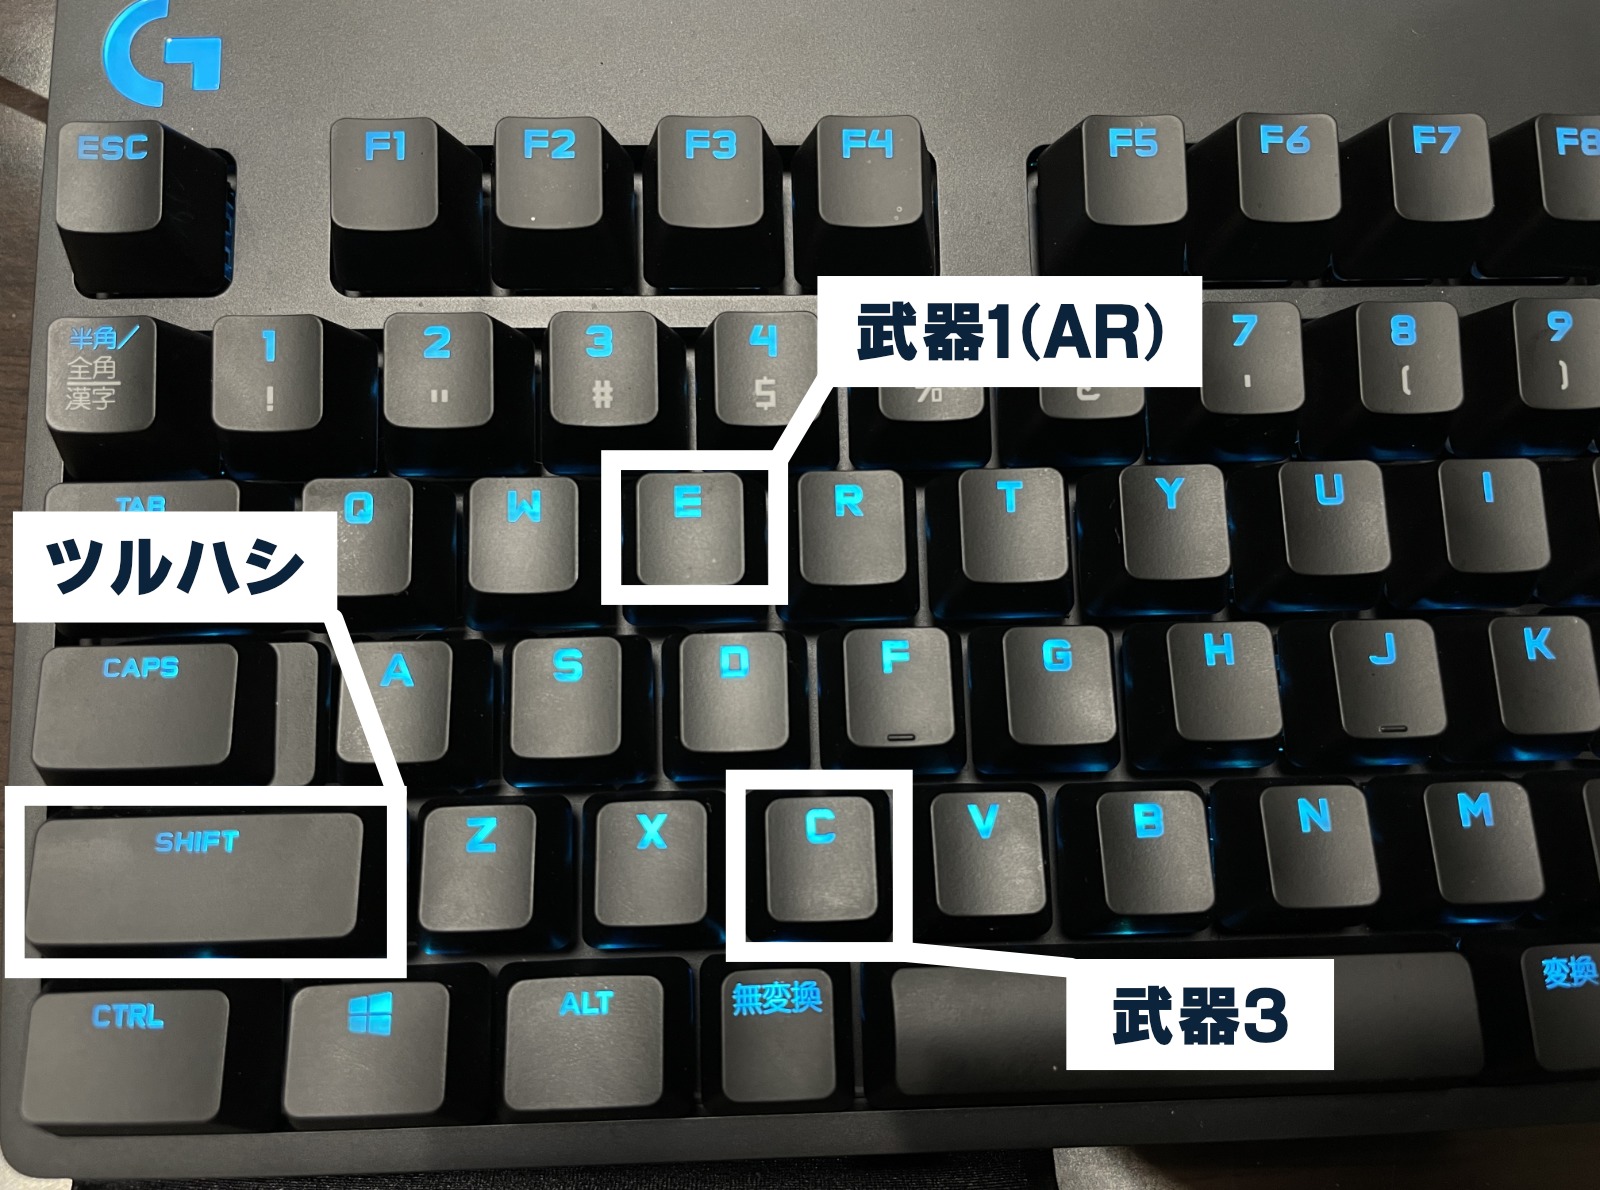 フォートナイト 僕のキーボード マウス キー配置ログ 年12月版 Akatsuki Games